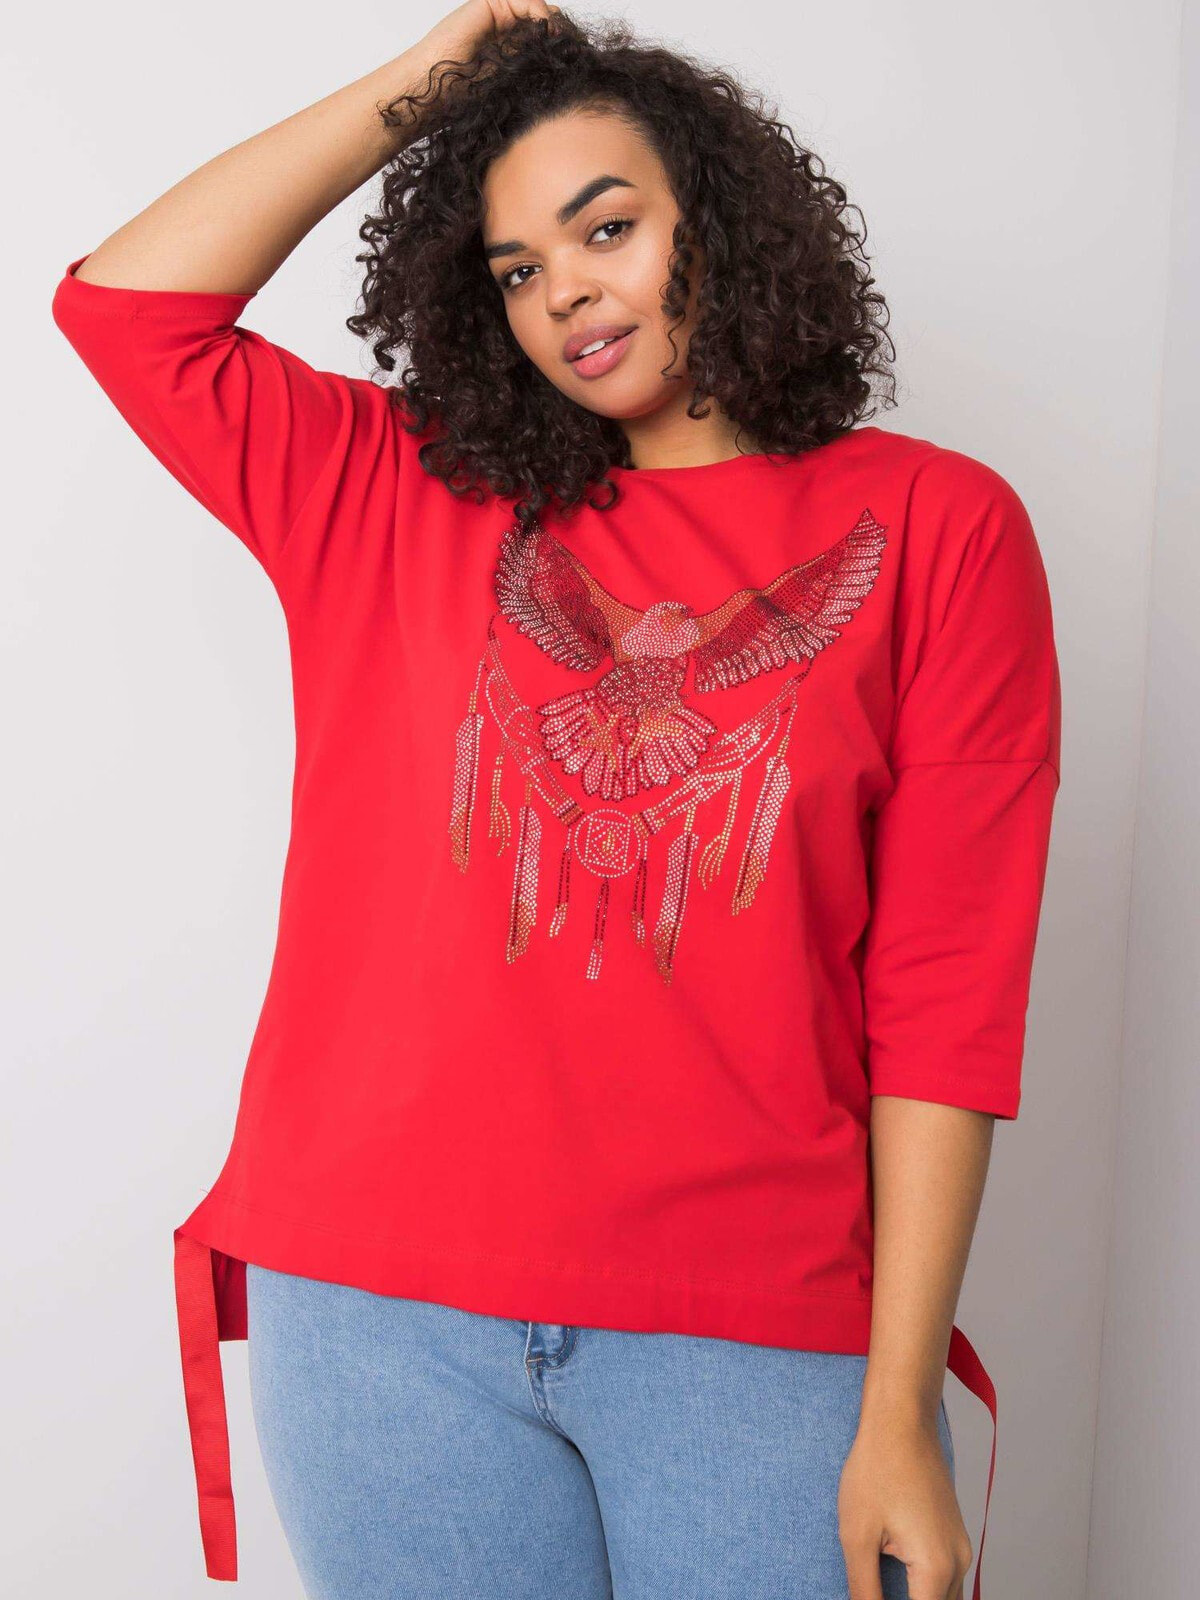 Женская блузка свободного кроя с длинным рукавом на завязках красная Factory Price